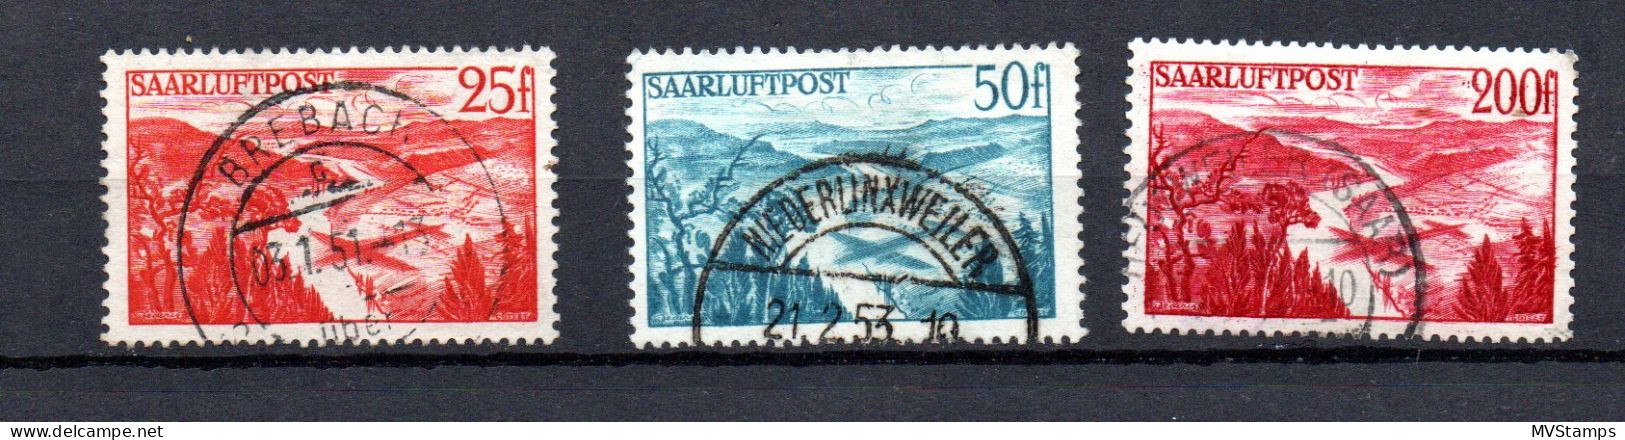 Saar/Germany 1948 Old Set Airmail Stamps (Michel 252/54) Nice Used - Luftpost